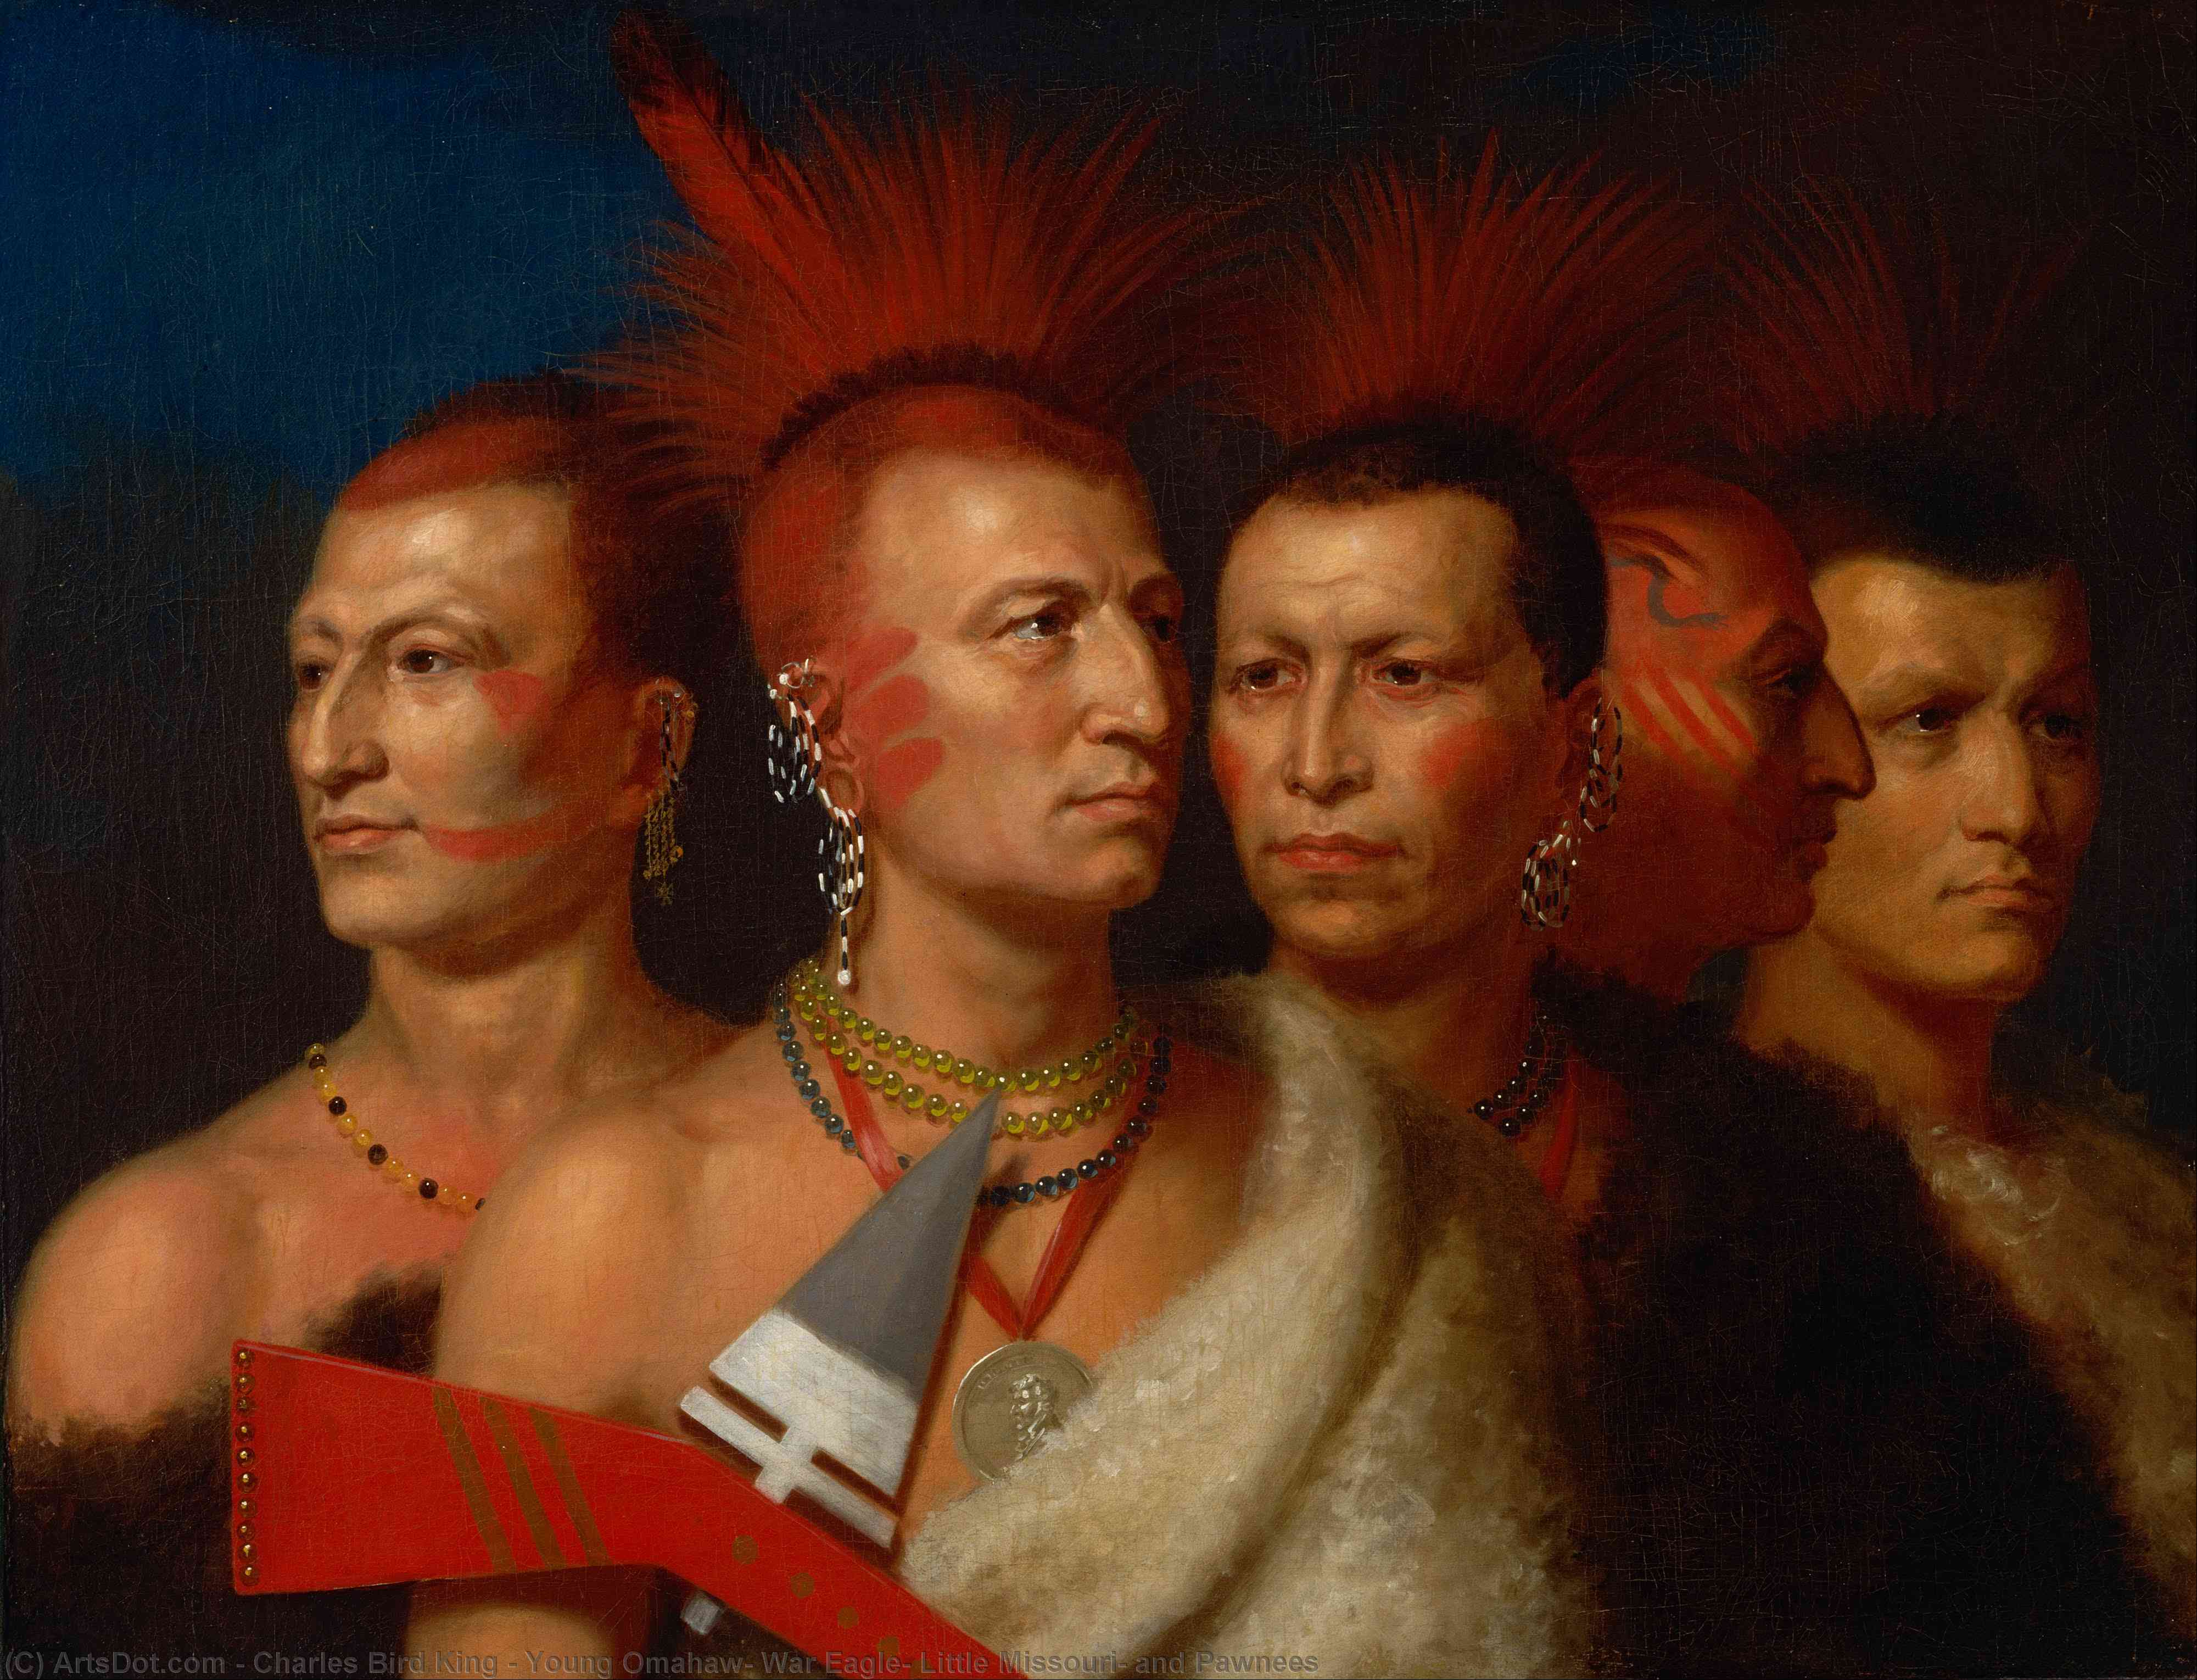 Kauf Museum Kunstreproduktionen Young Omahaw, War Eagle, Little Missouri und Pawnees, 1821 von Charles Bird King (1785-1862, United States) | ArtsDot.com